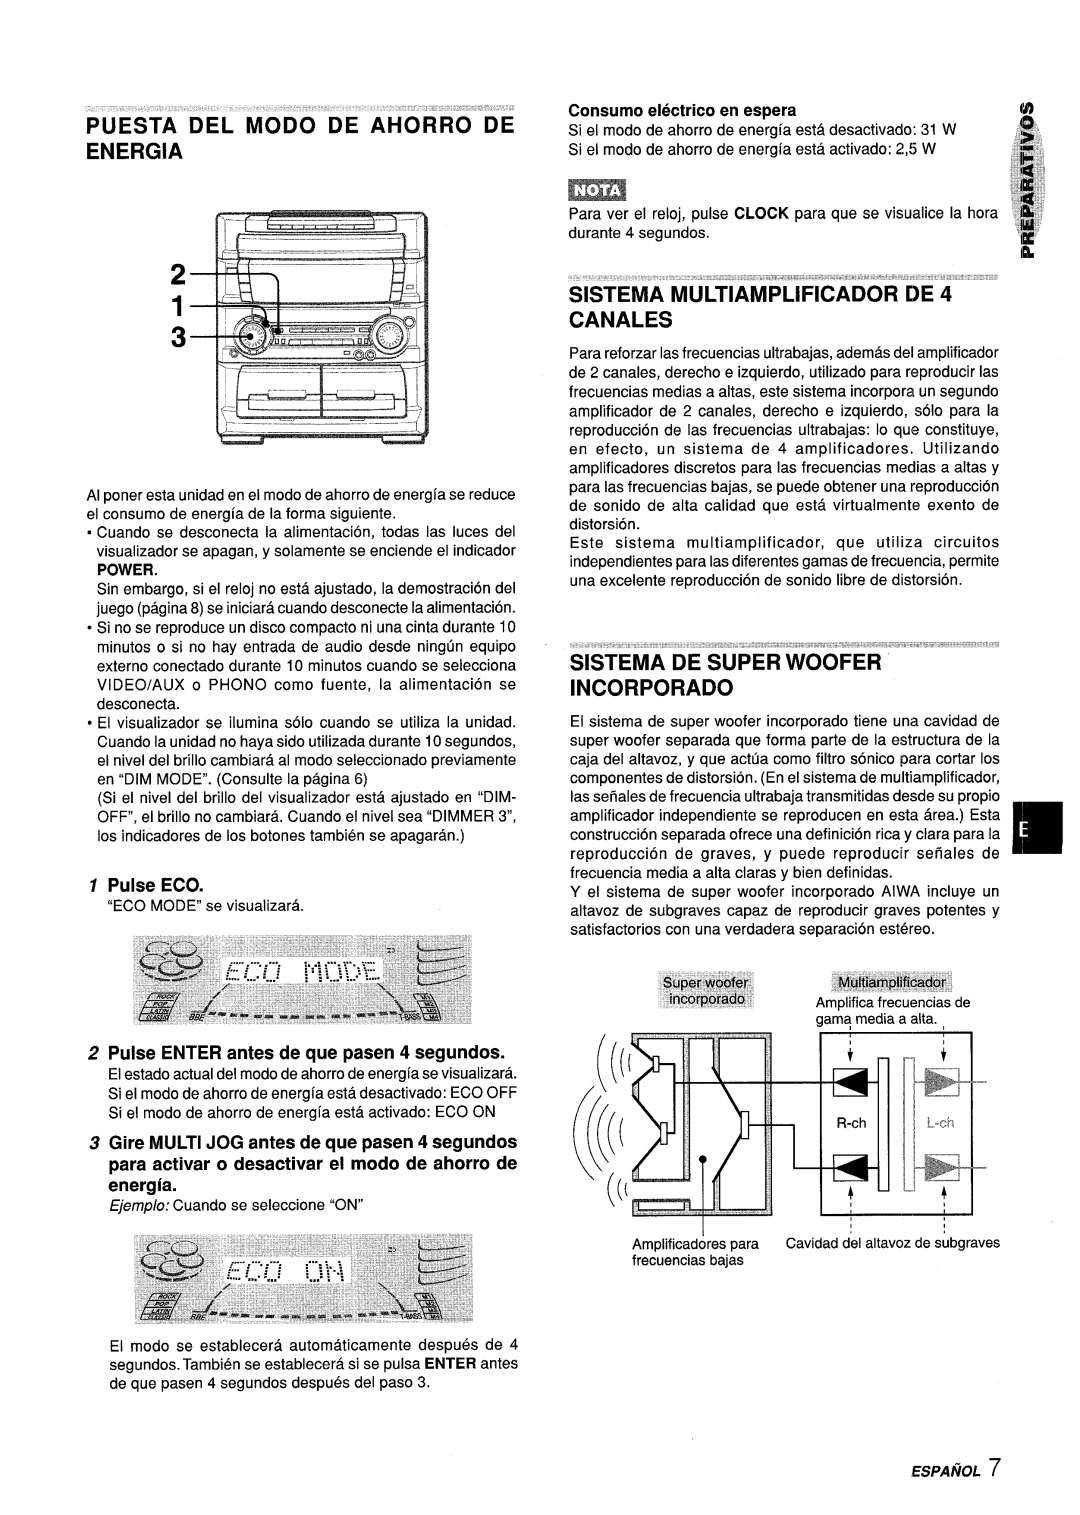 Aiwa Z-L70 manual Puesta Del Modo De Ahorro “De Energia, SISTEMA MULTIA’M3’Pfiti’CADO’R DE 4 CANALES, Pulse ECO, energia 